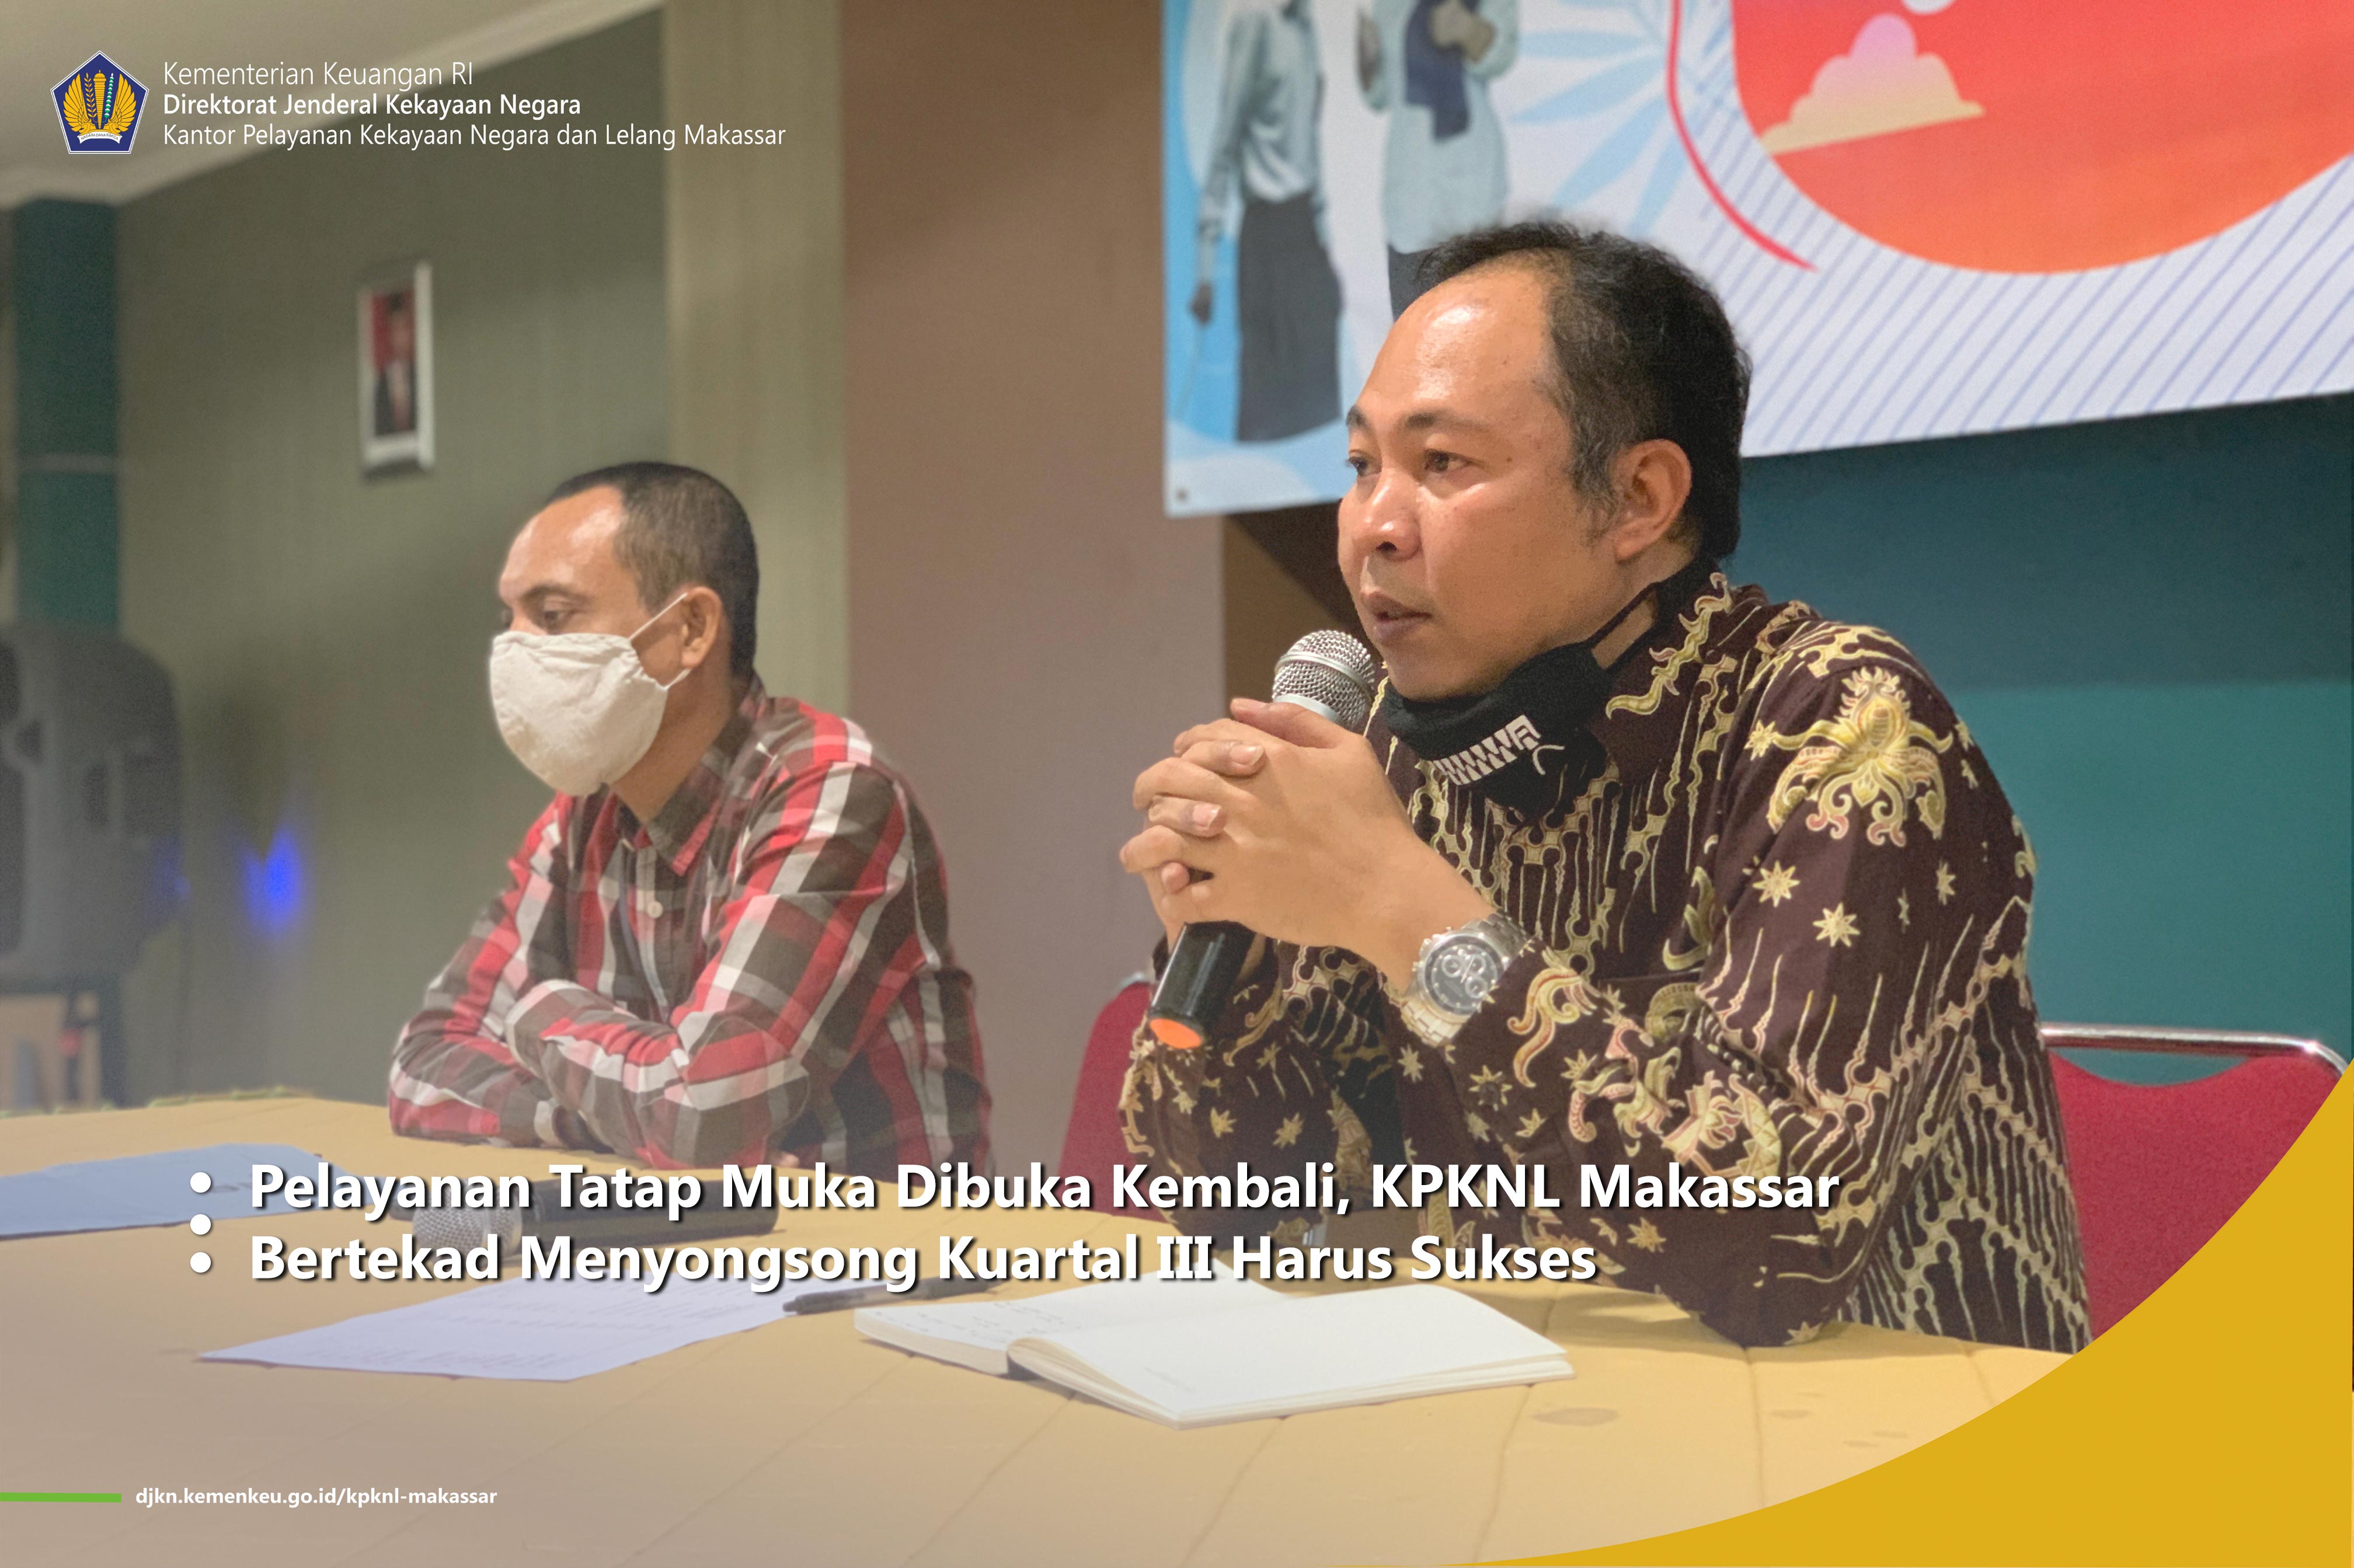 Pelayanan Tatap Muka Dibuka Kembali, KPKNL Makassar Bertekad Menyongsong Kuartal III Harus Sukses